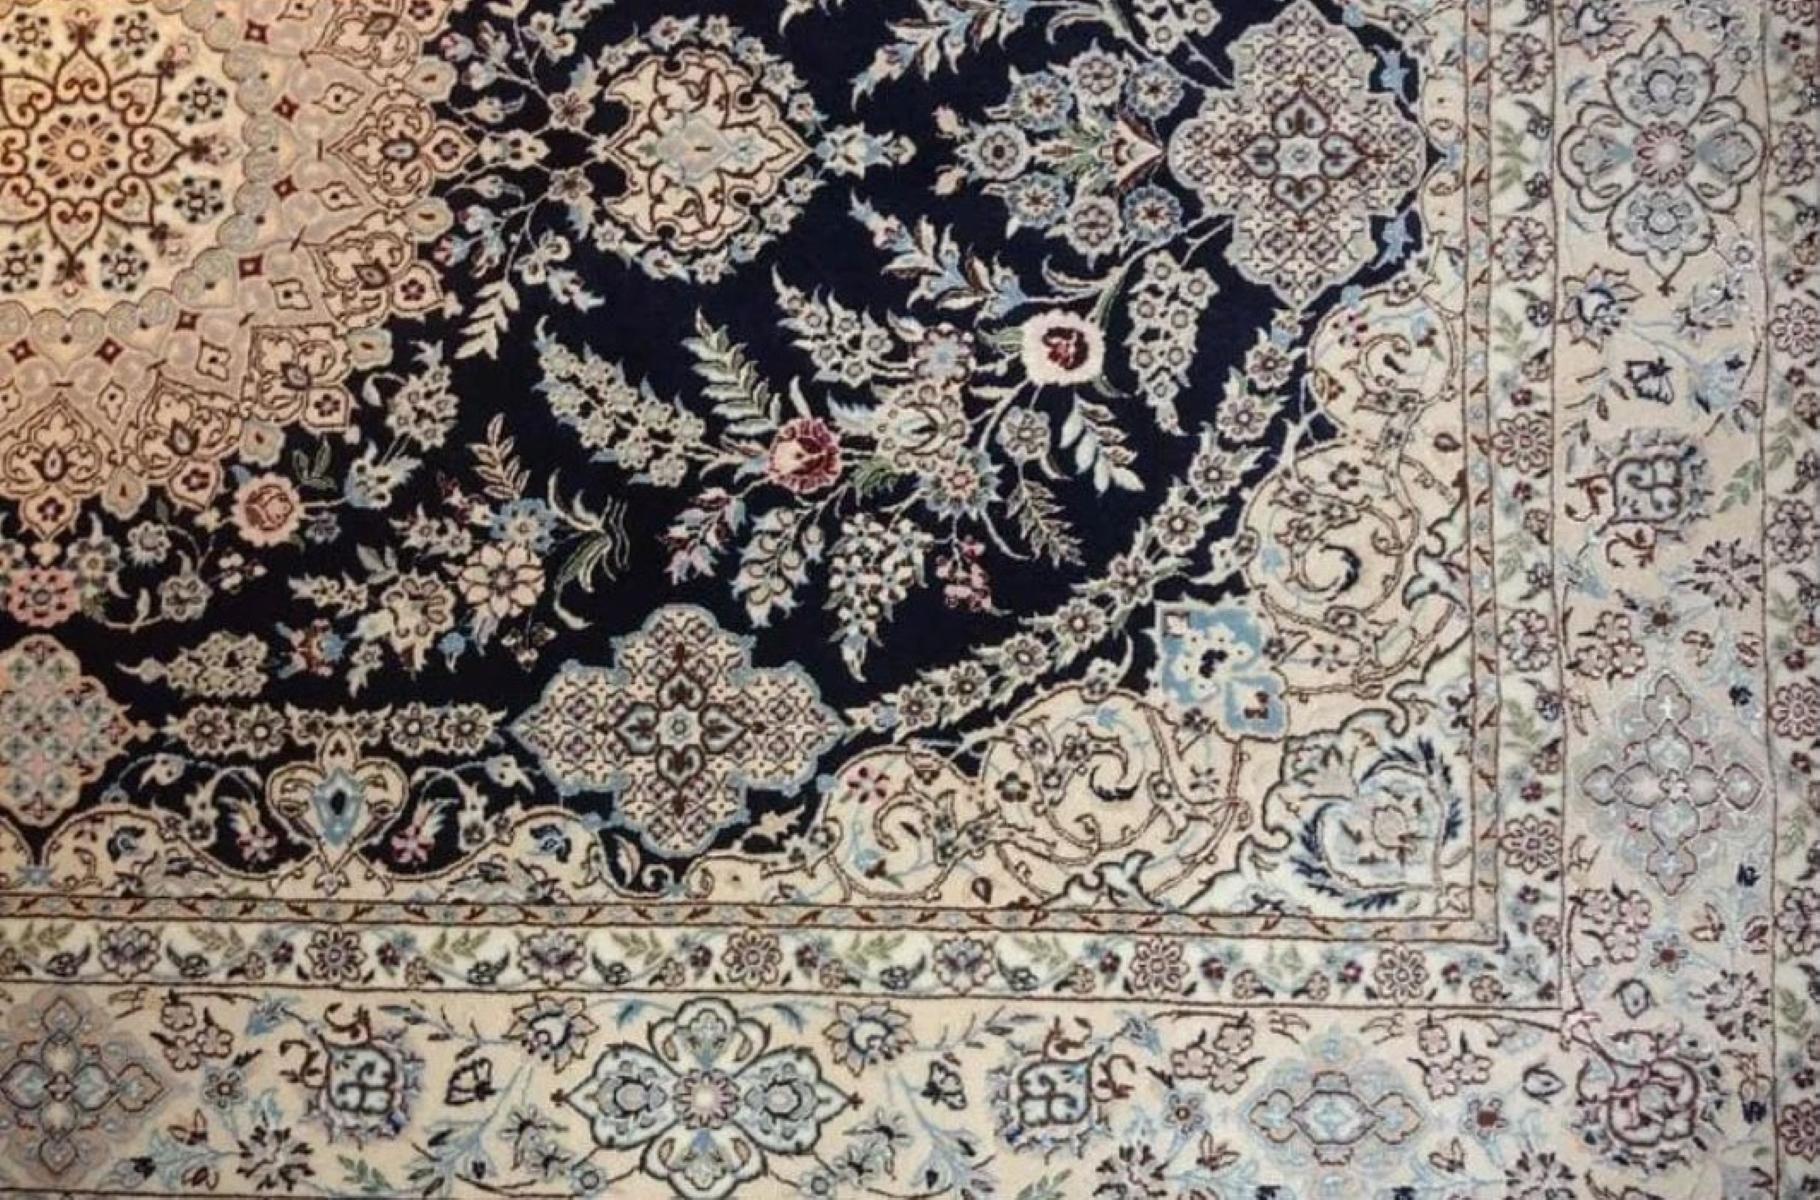 Très beau tapis persan Nain 500 noeuds par pouce, Taille 5.2 x 8  Laine et soie. Environ 2 800 000 nœuds noués à la main, un par un. Il faut deux ans pour réaliser cette œuvre d'art.